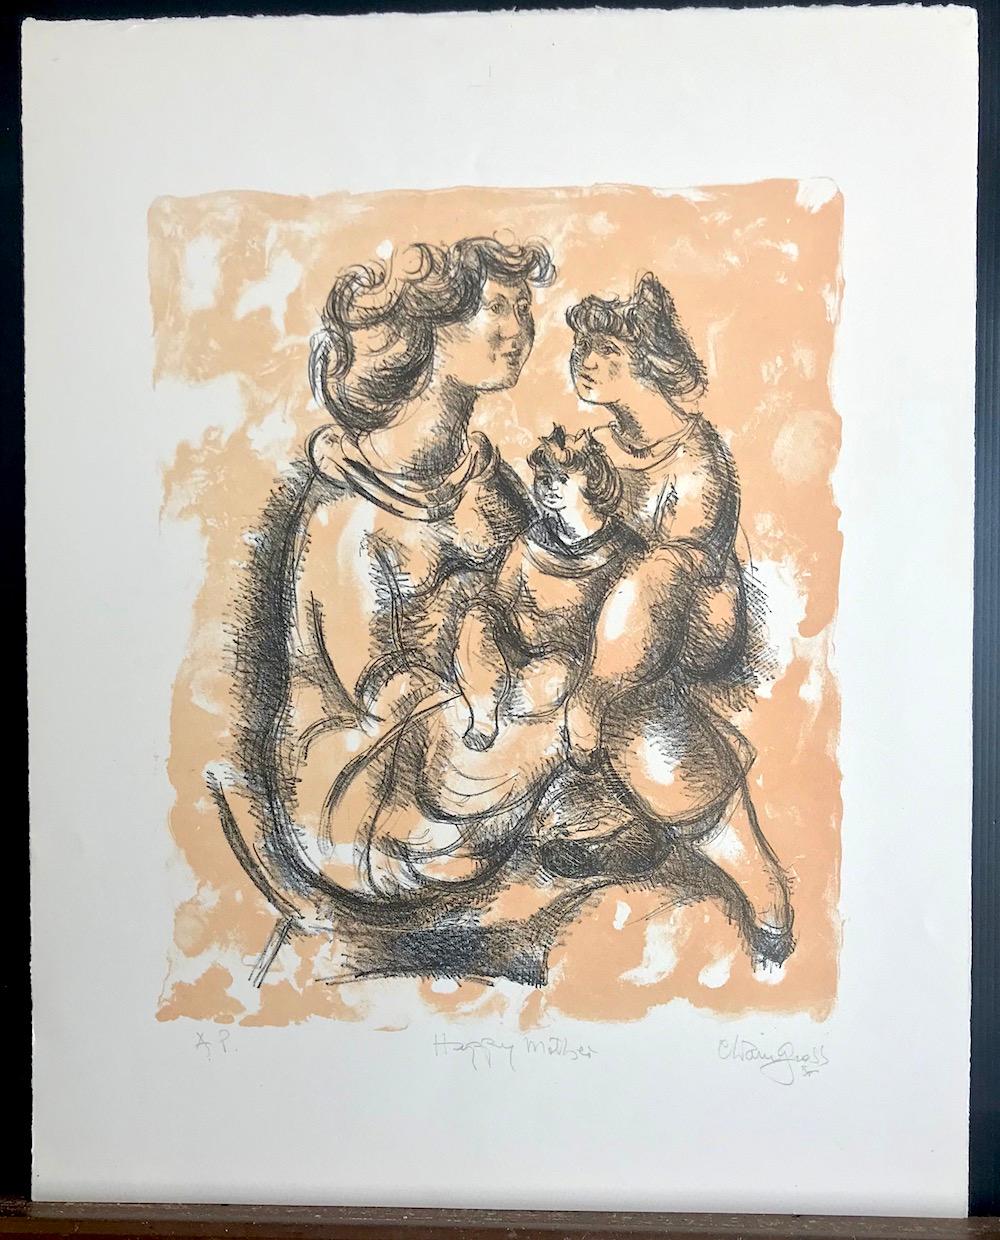 HAPPY MOTHER ist eine original handgezeichnete Steinlithographie des amerikanischen Künstlers und Bildhauers Chaim Gross. HAPPY MOTHER ist eine liebenswerte Figurenstudie einer Mutter mit ihren beiden kleinen Töchtern, die 1975 in NYC von